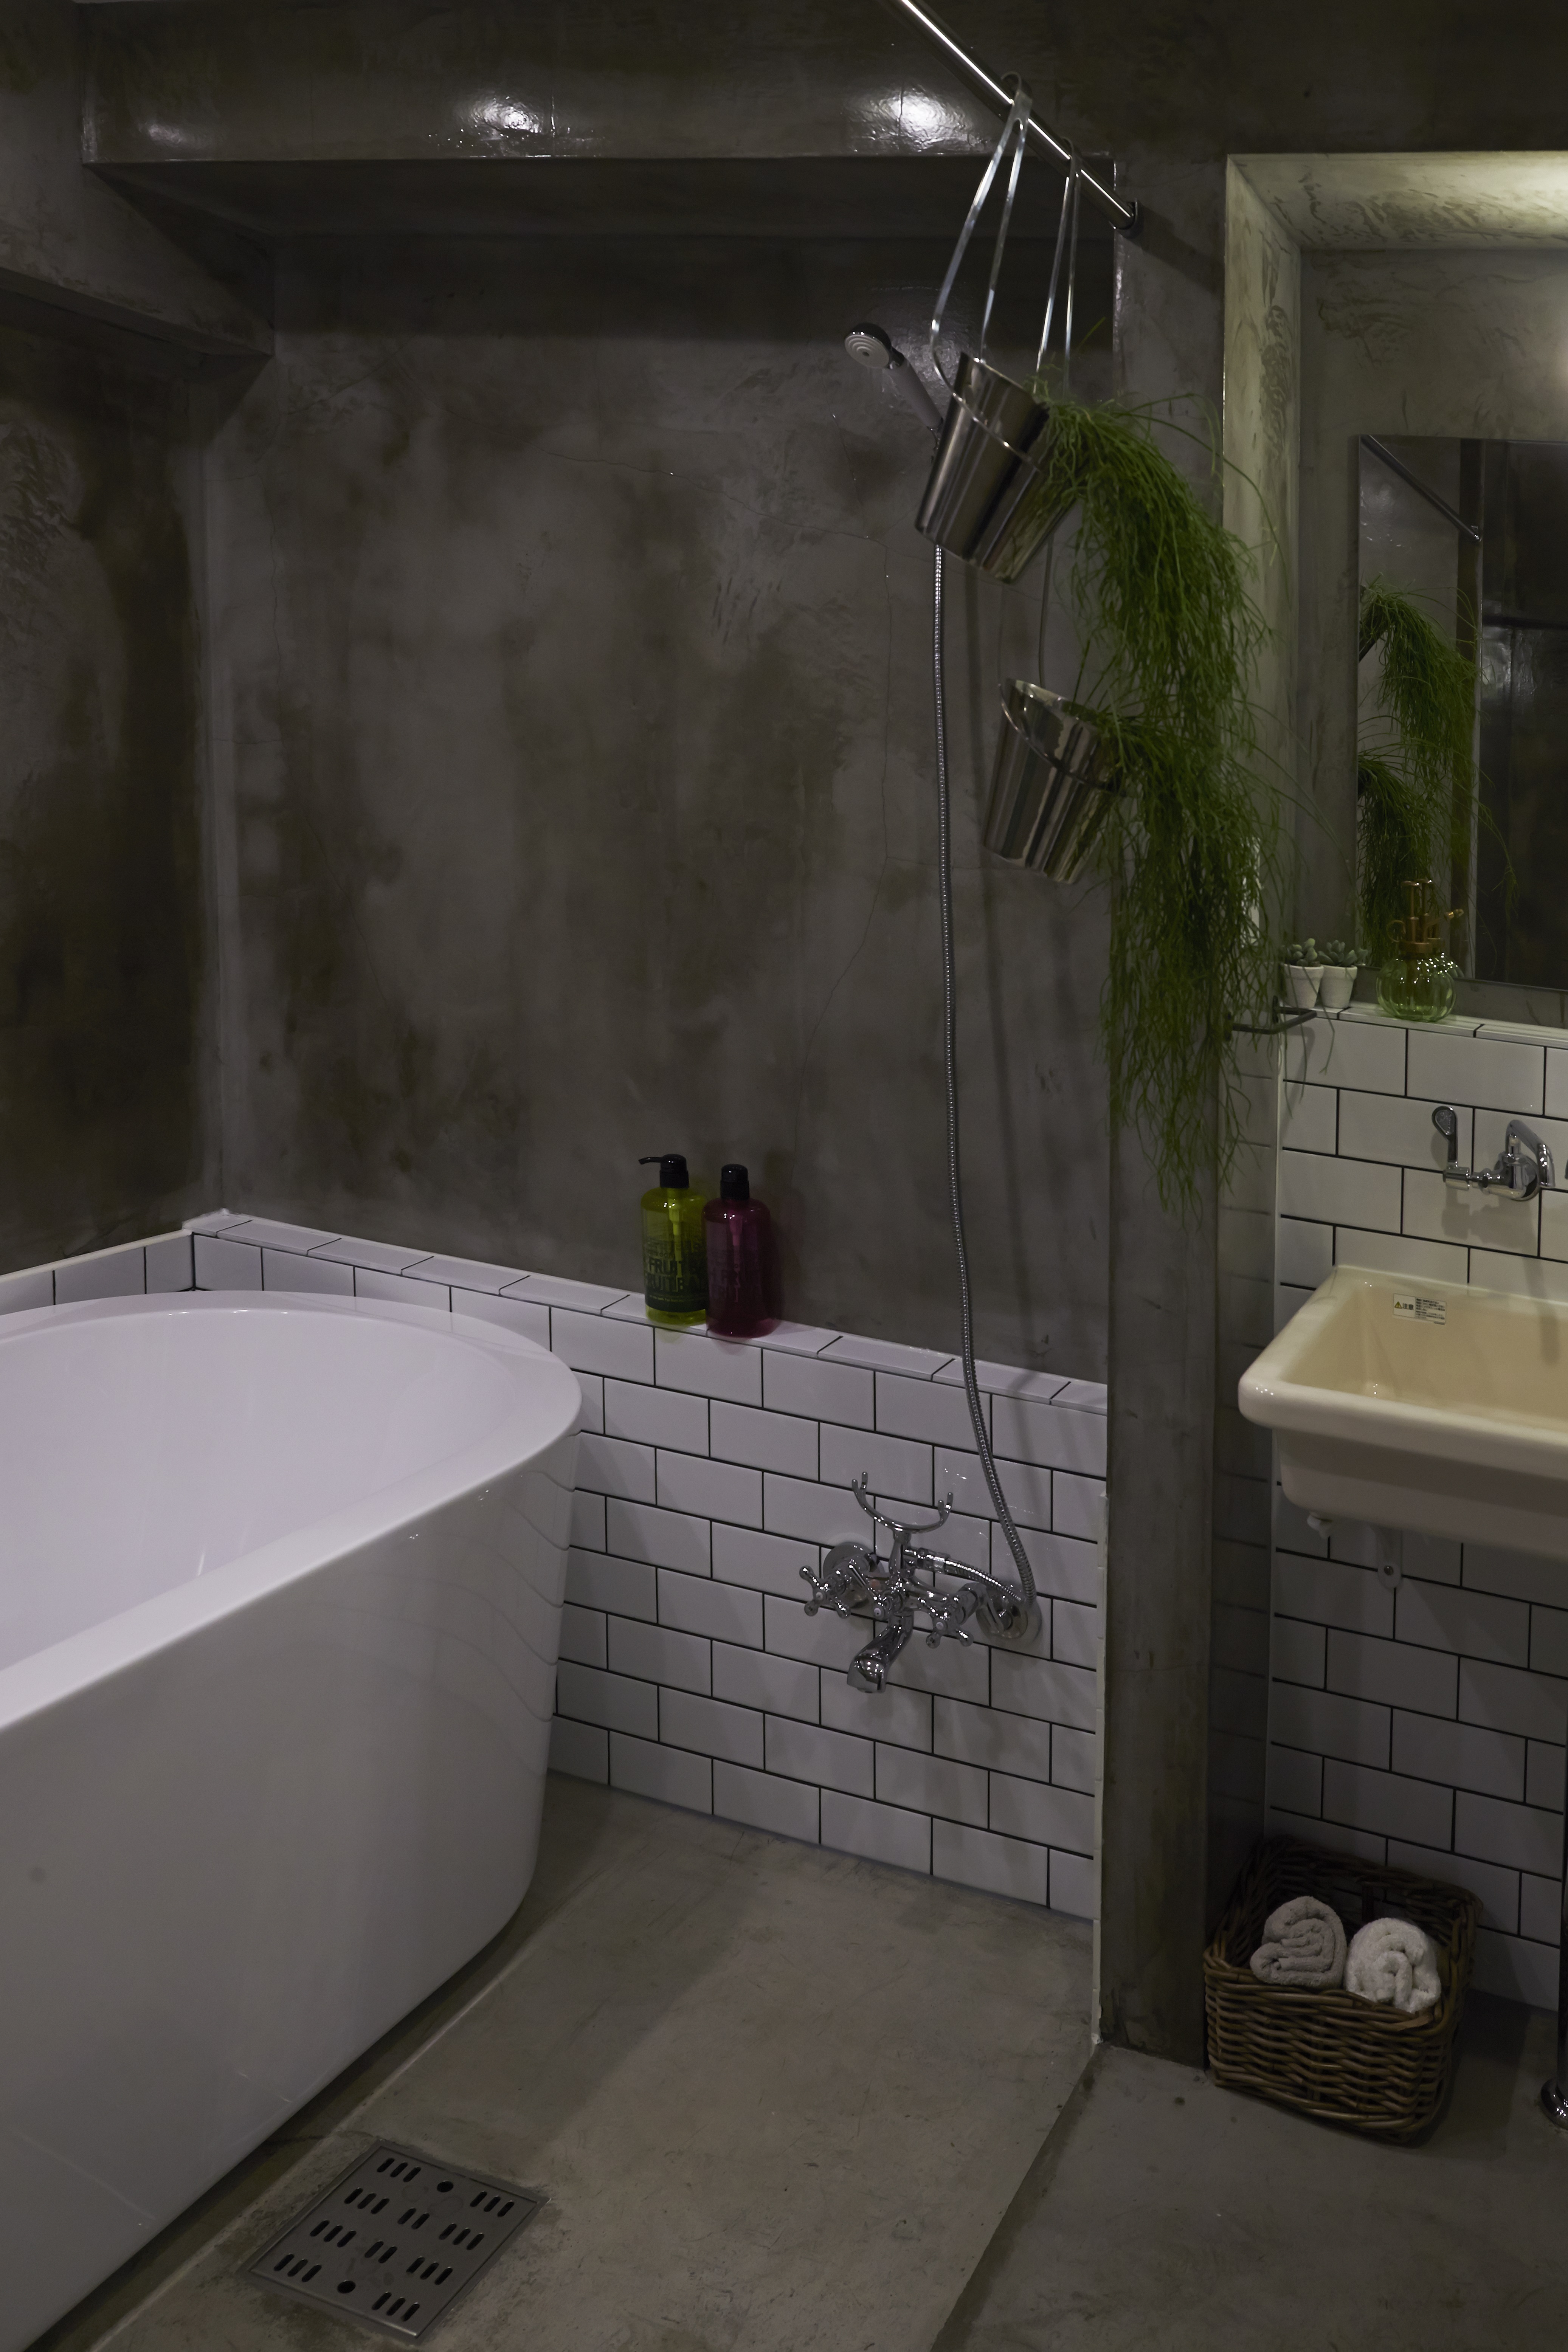 おしゃれな浴室のリフォーム事例11選 ユニットバスと在来工法のお風呂を紹介 リノベーションのshuken Re